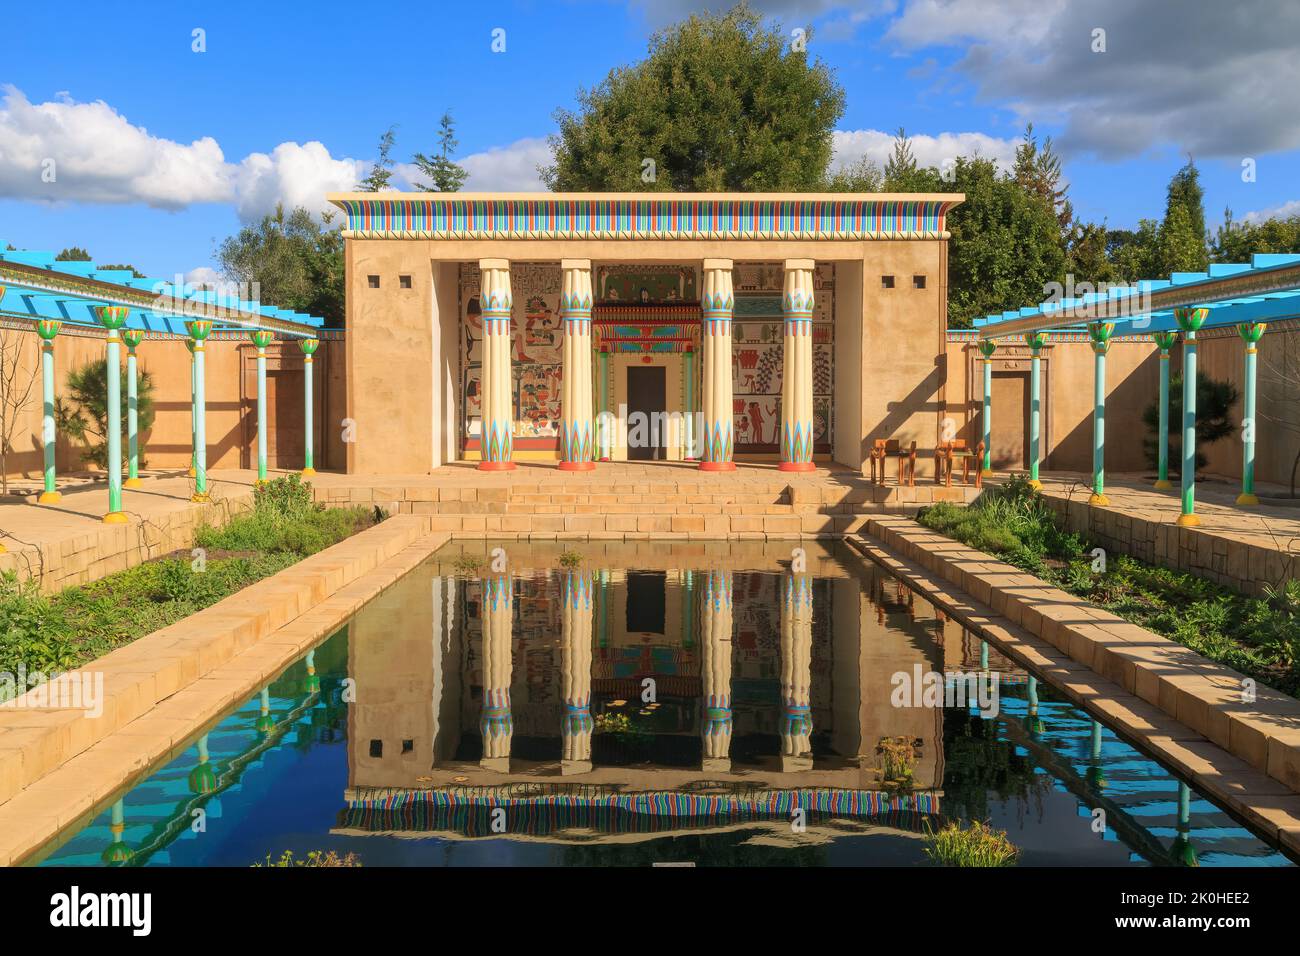 L'antico giardino egiziano, uno dei giardini a tema di Hamilton Gardens, un parco di Hamilton, Nuova Zelanda. Il tempio del giardino, riflesso in una piscina Foto Stock